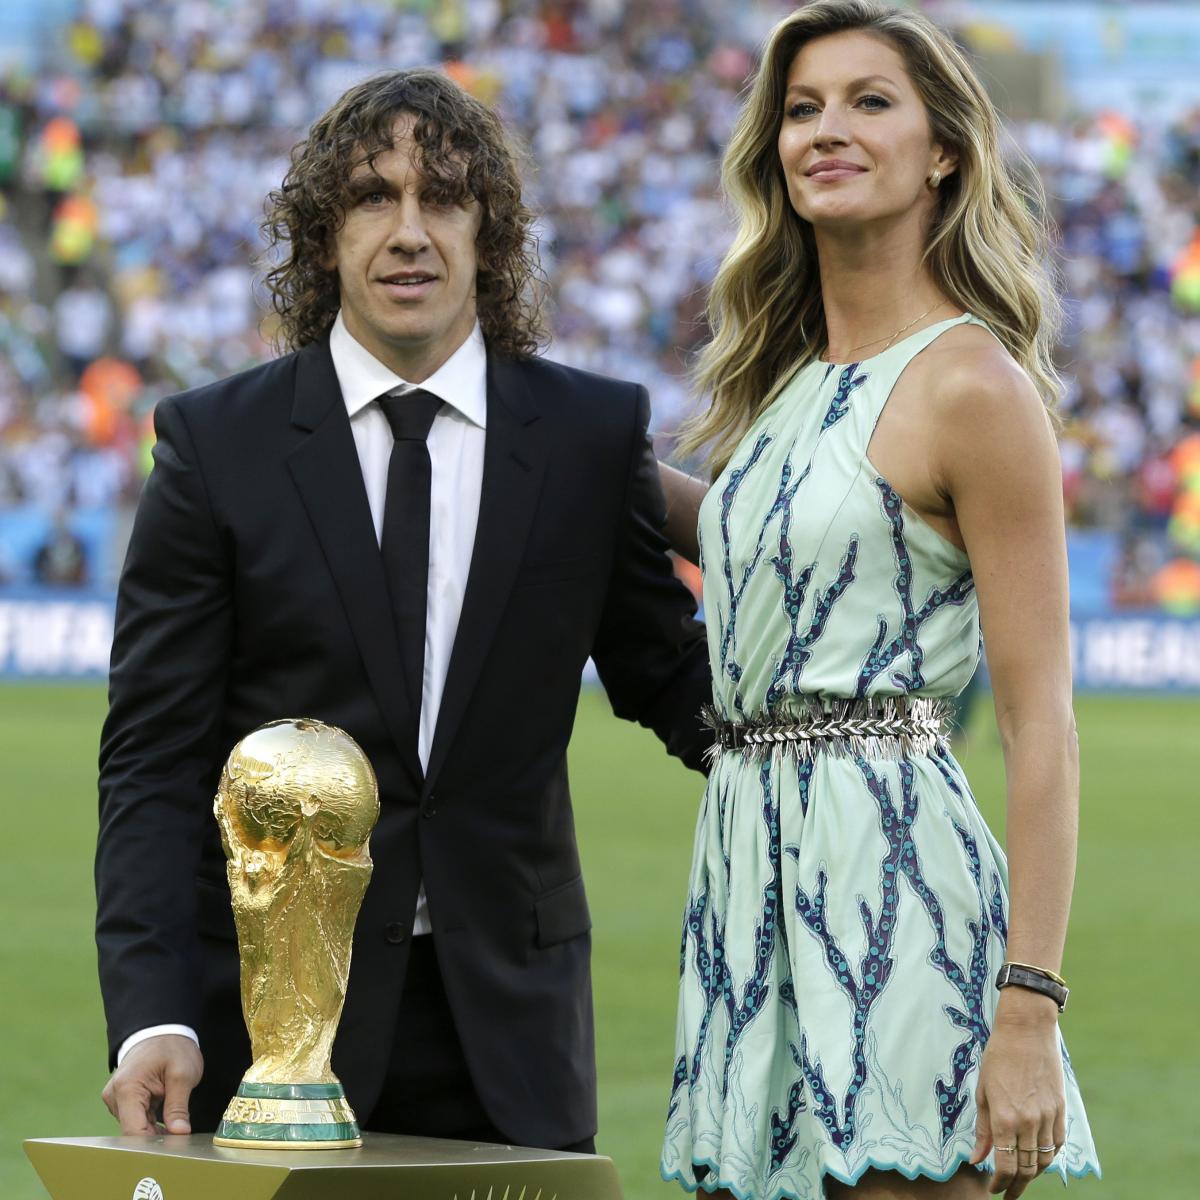 Supermodel Gisele Bundchen and 2010 FIFA World Cup Champion Carlos